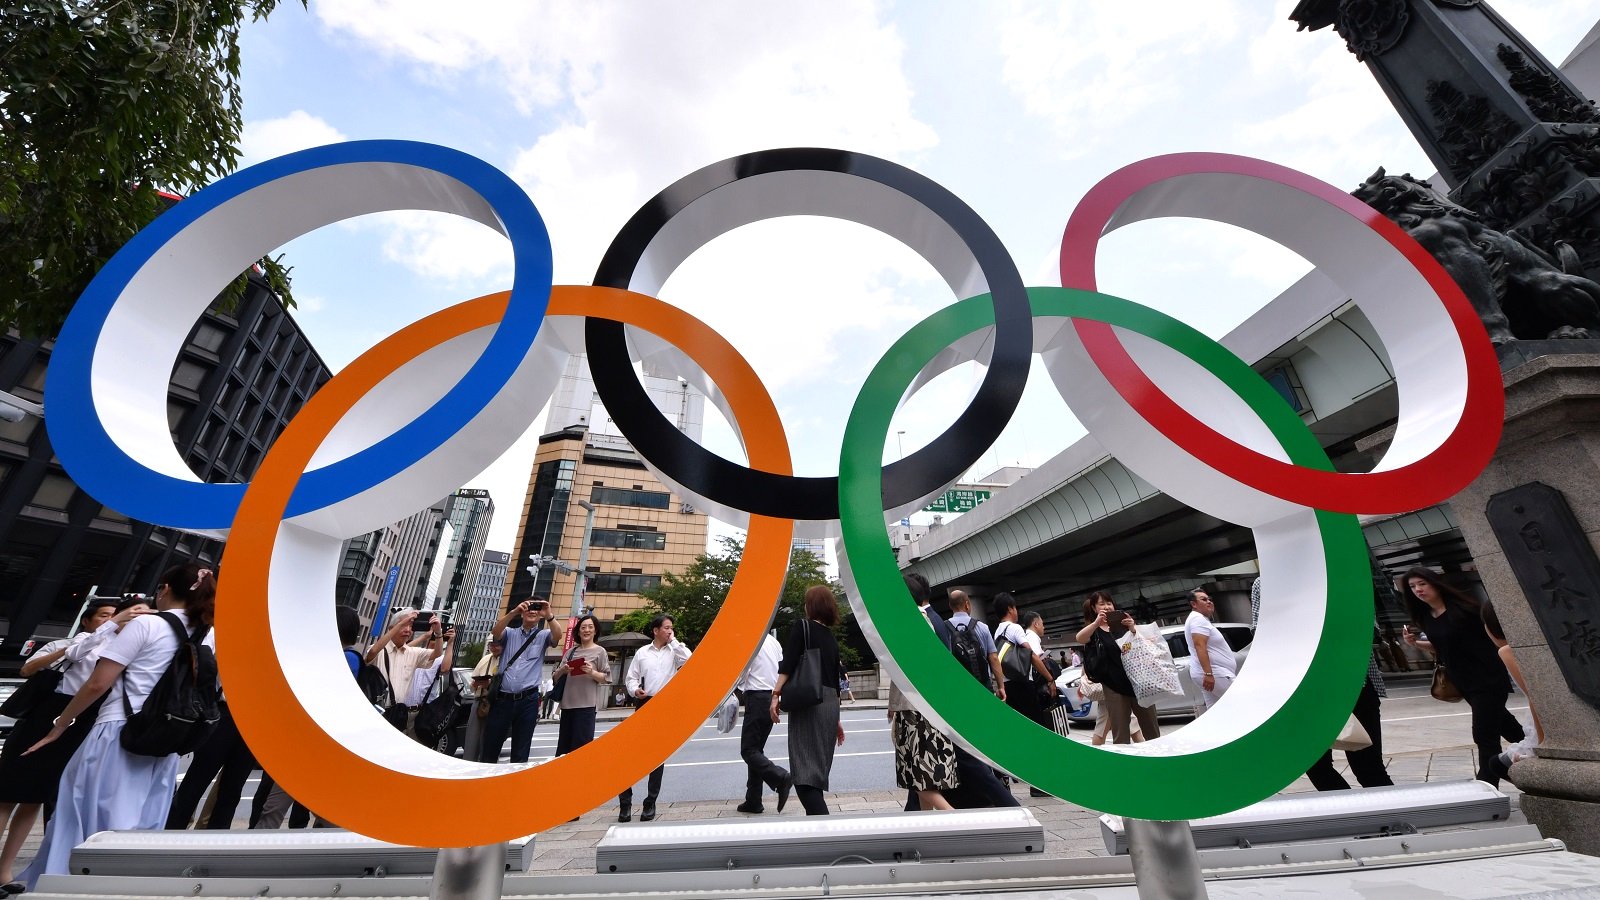 Օլիմպիական խաղերը չեղարկելու ստորագրահավաքին արդեն միացել է ավելի քան 400 հազար մարդ